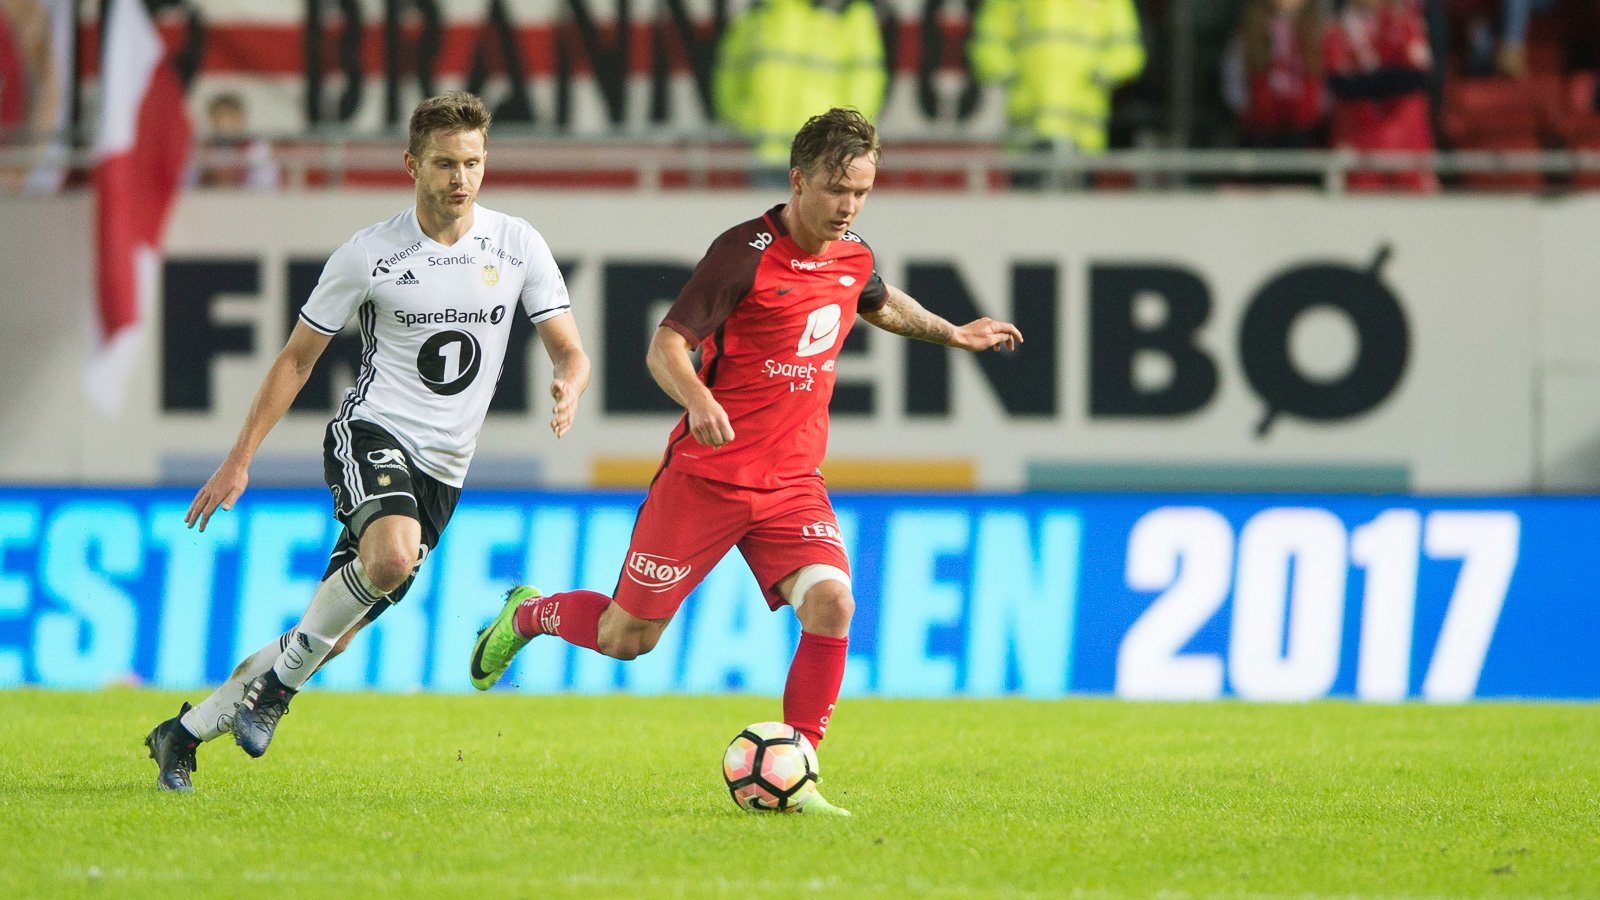 Nhận định kèo bóng đá: Rosenborg vs Brann – 01h30 21/05/2021